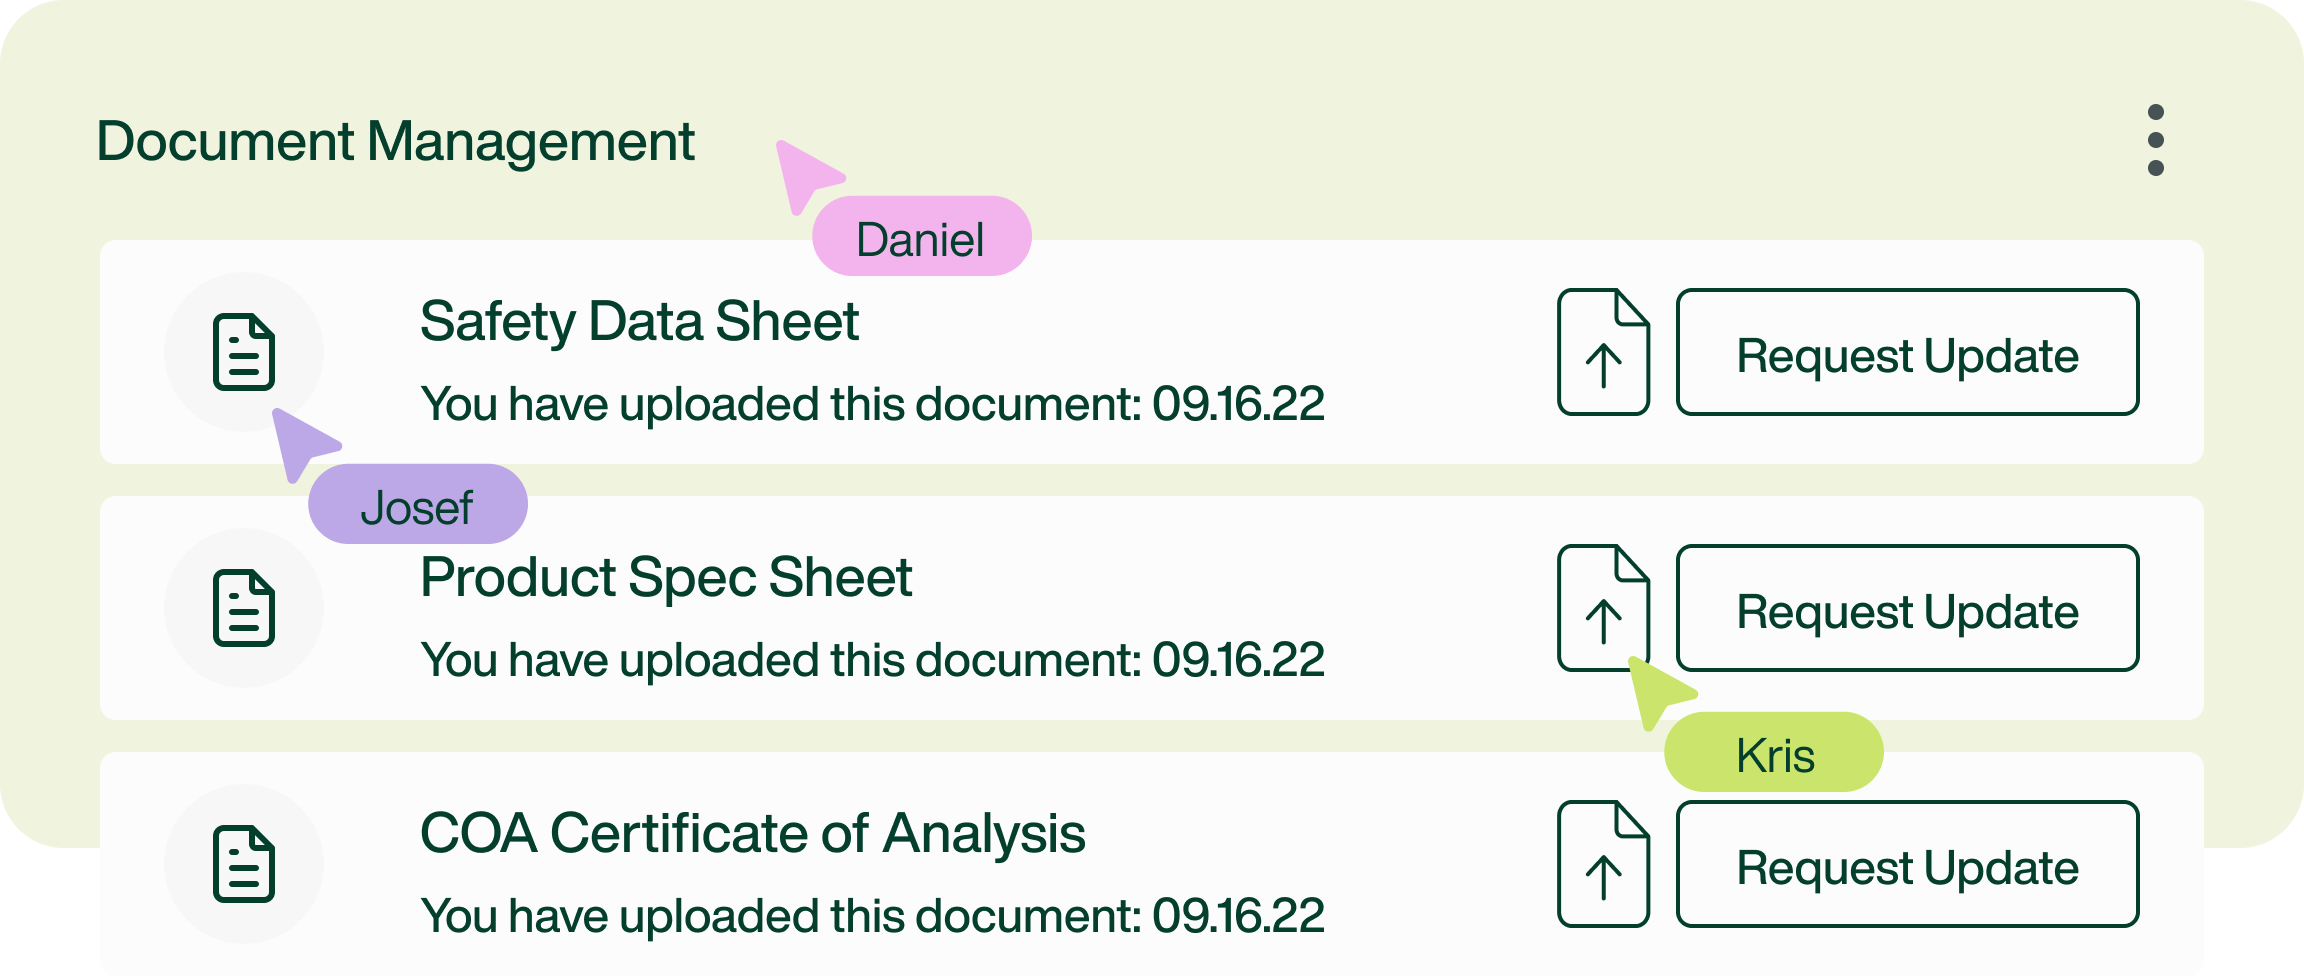 Document Management - External Sharing Screen